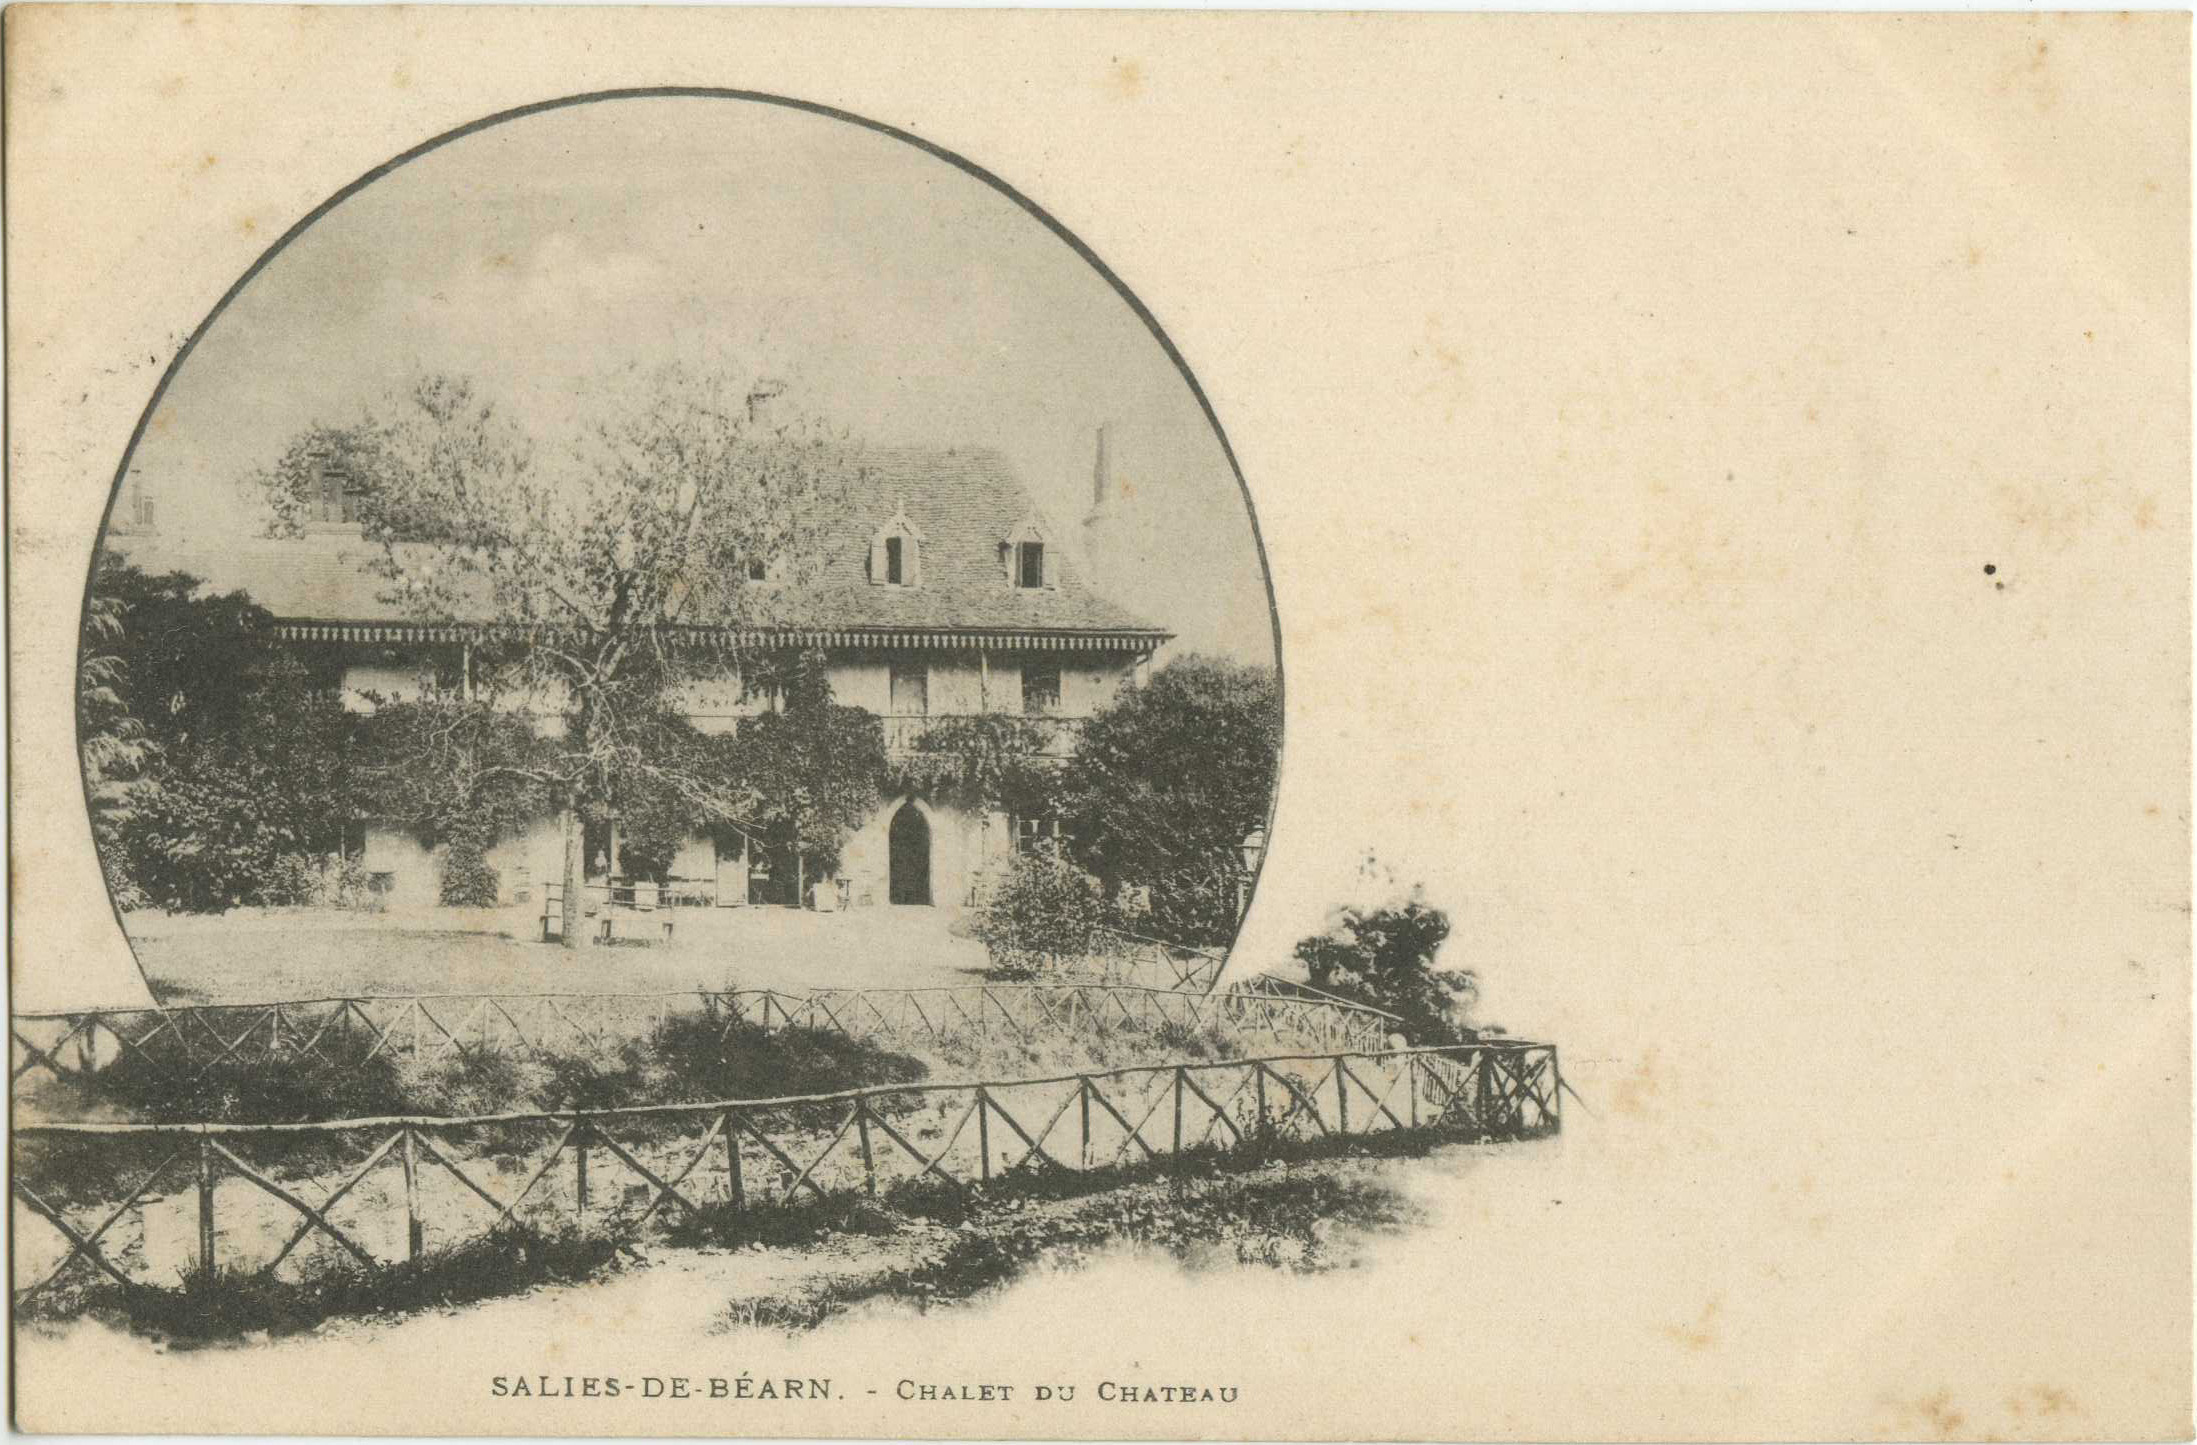 Salies-de-Béarn - Chalet du Chateau